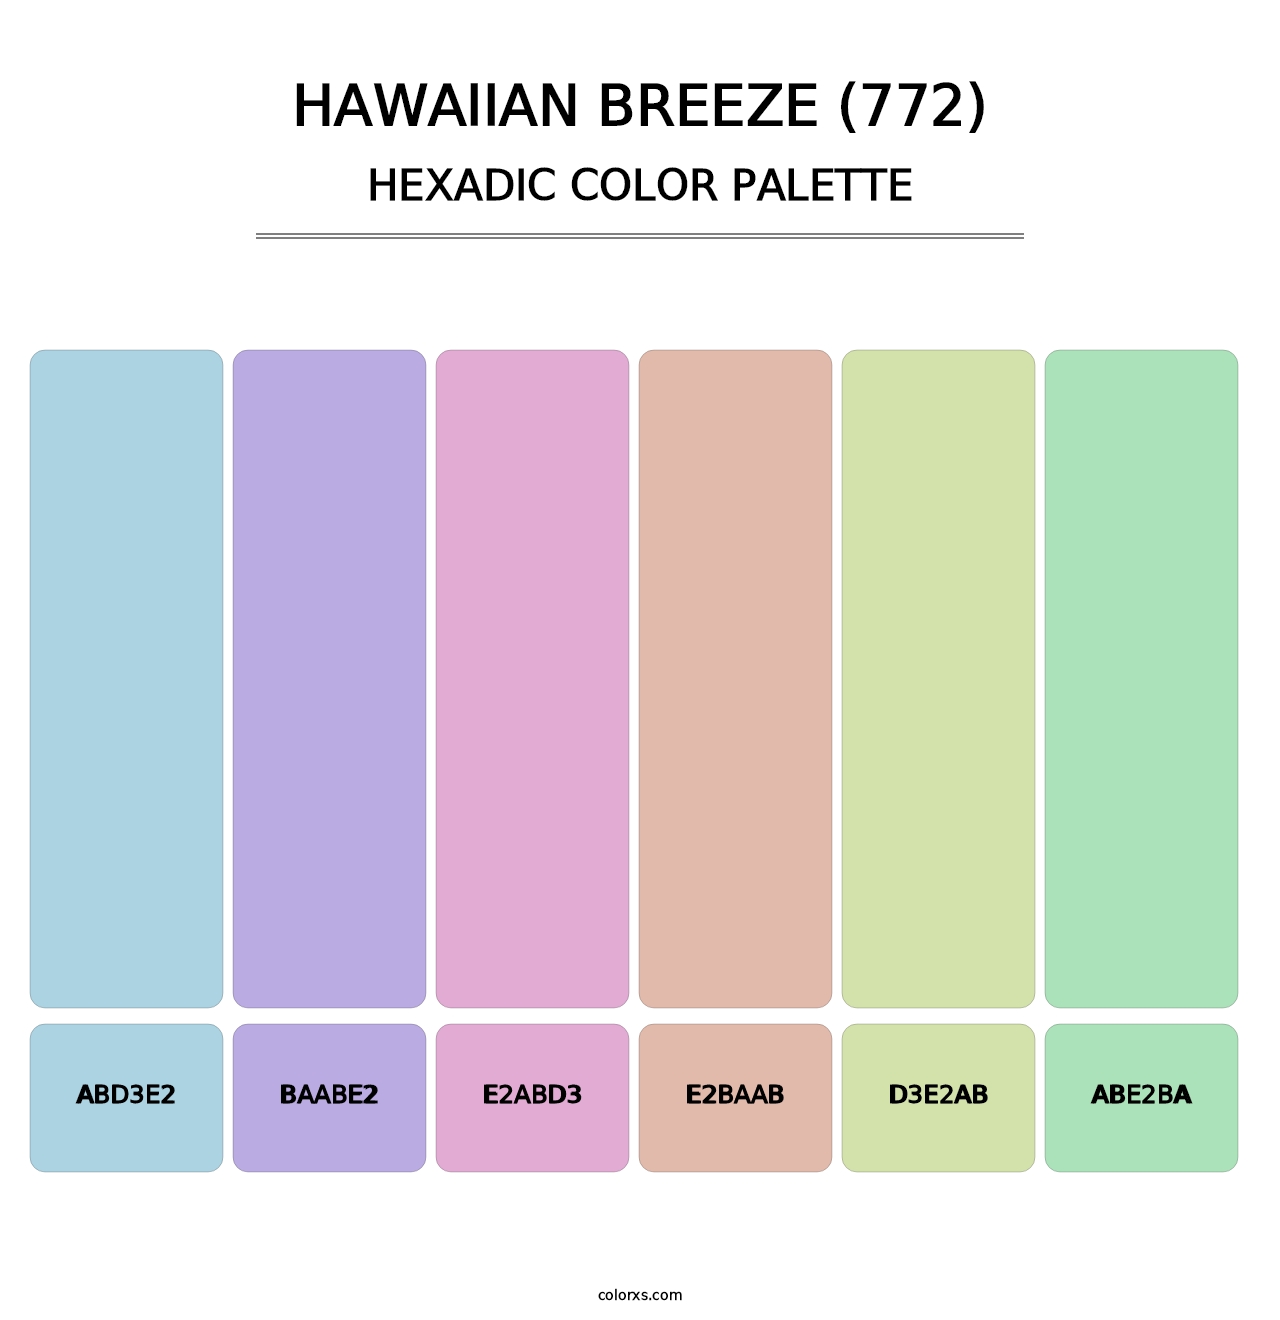 Hawaiian Breeze (772) - Hexadic Color Palette